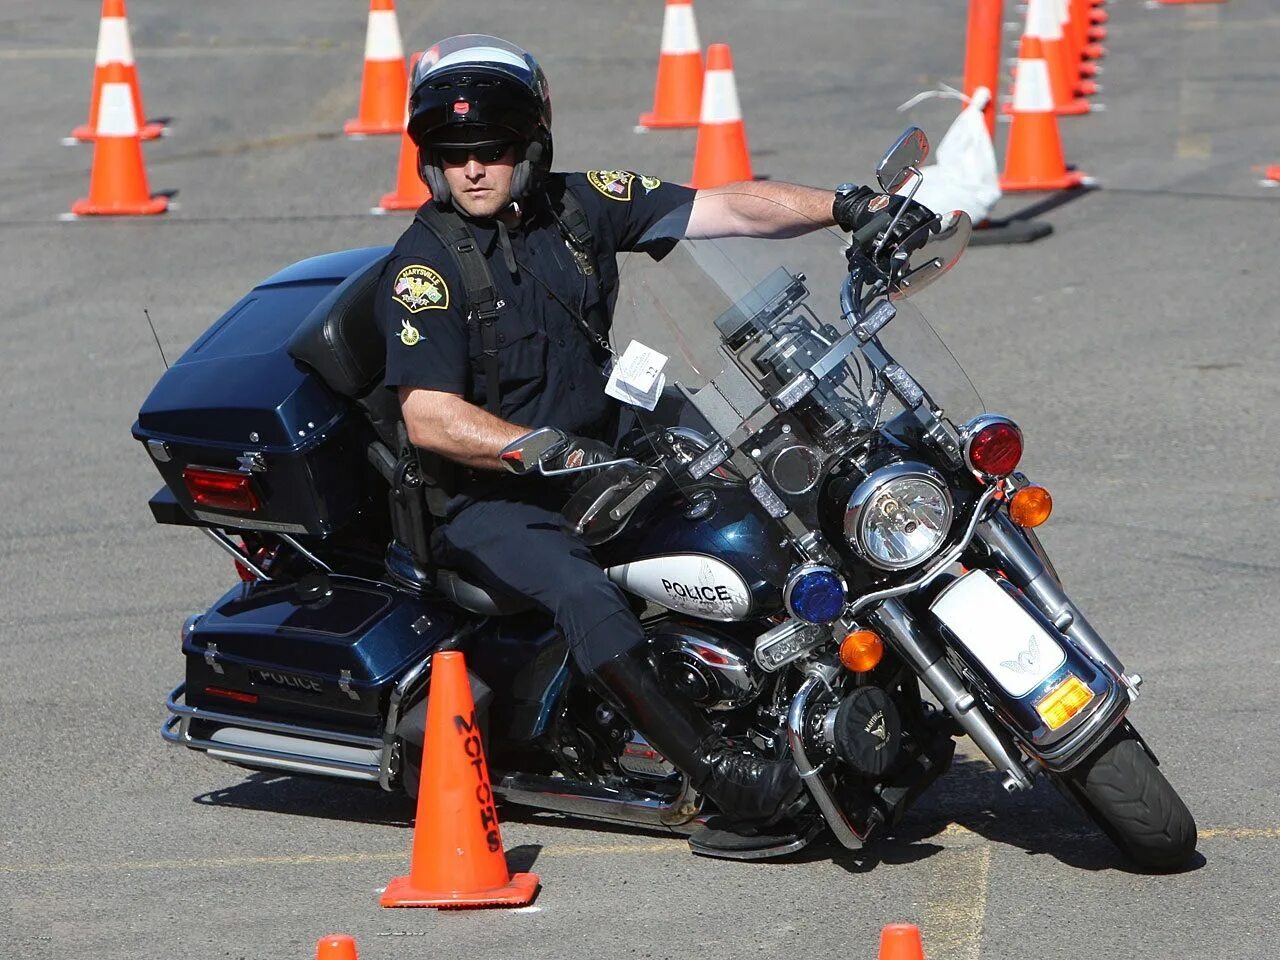 Полицейский Харлей Дэвидсон. Полицейские мотоциклы Harley Davidson. Мотоцикл полицейский Харлей. Мотобат Харли Дэвидсон. Можно ли таранить мотоцикл полицейским